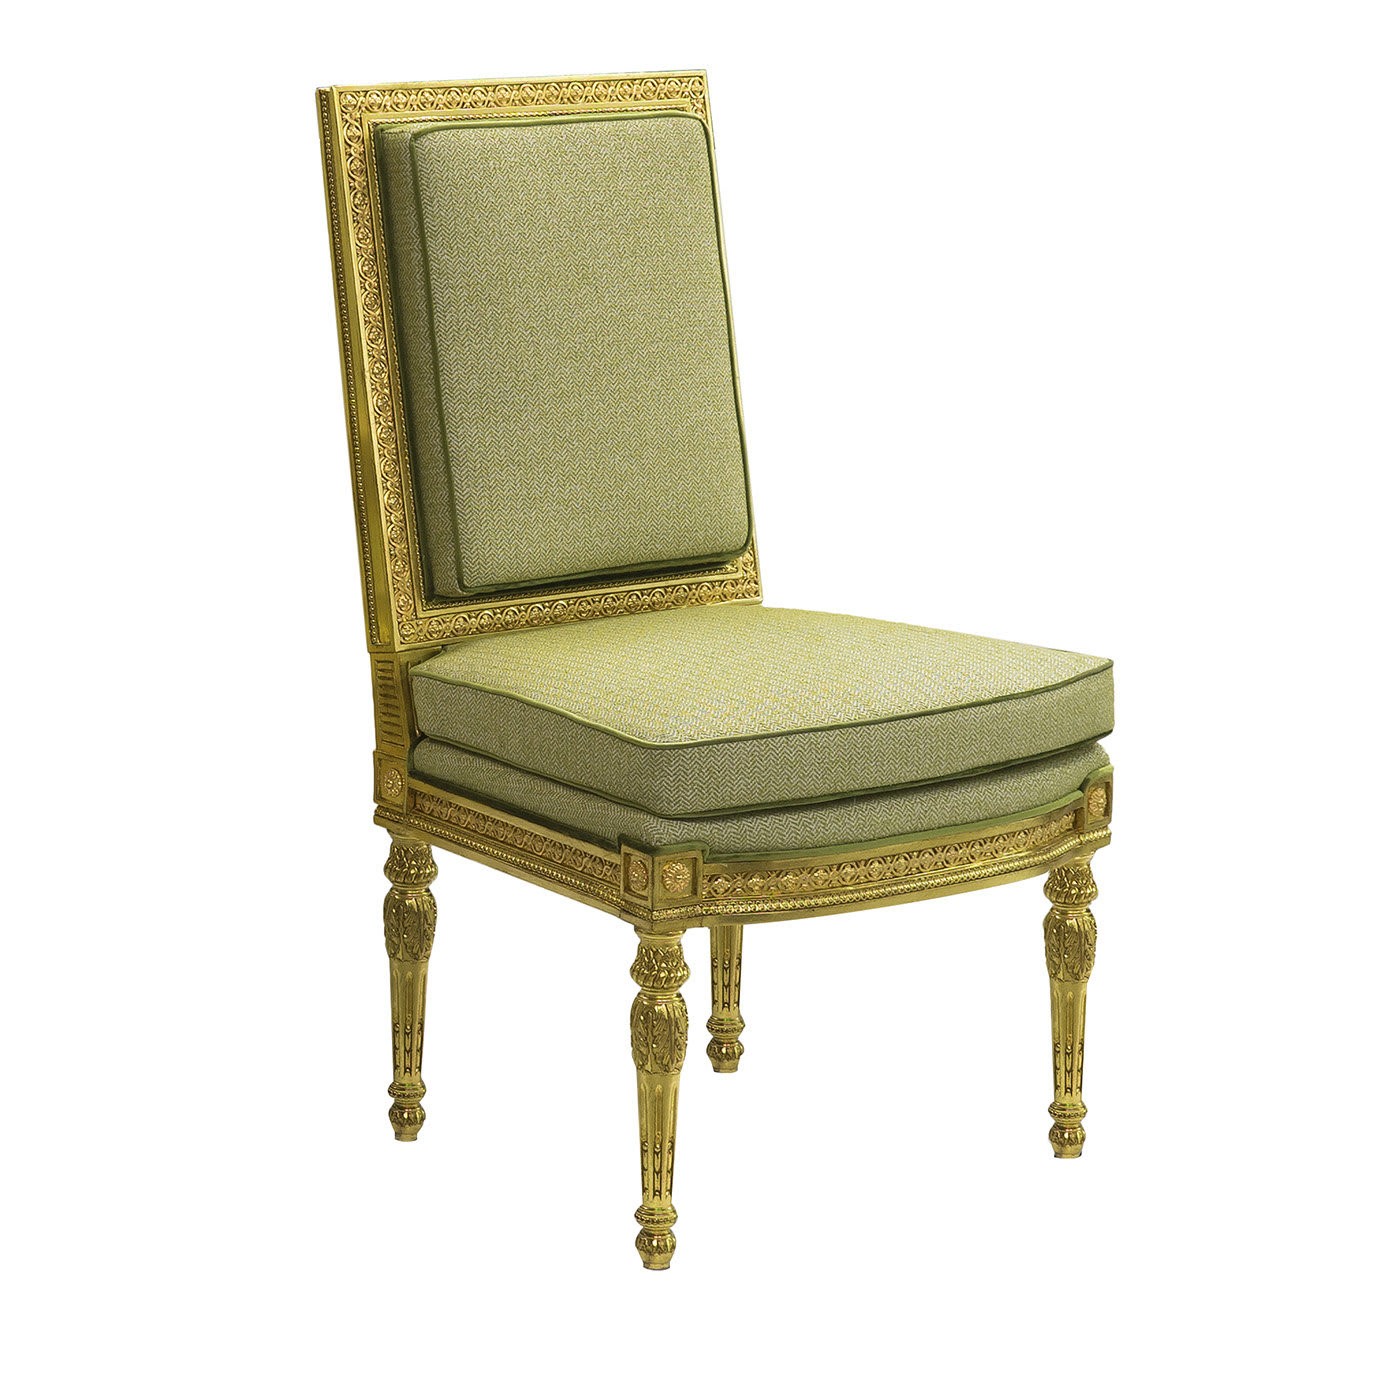 Louis XVI style Chair #2 - CG Capelletti